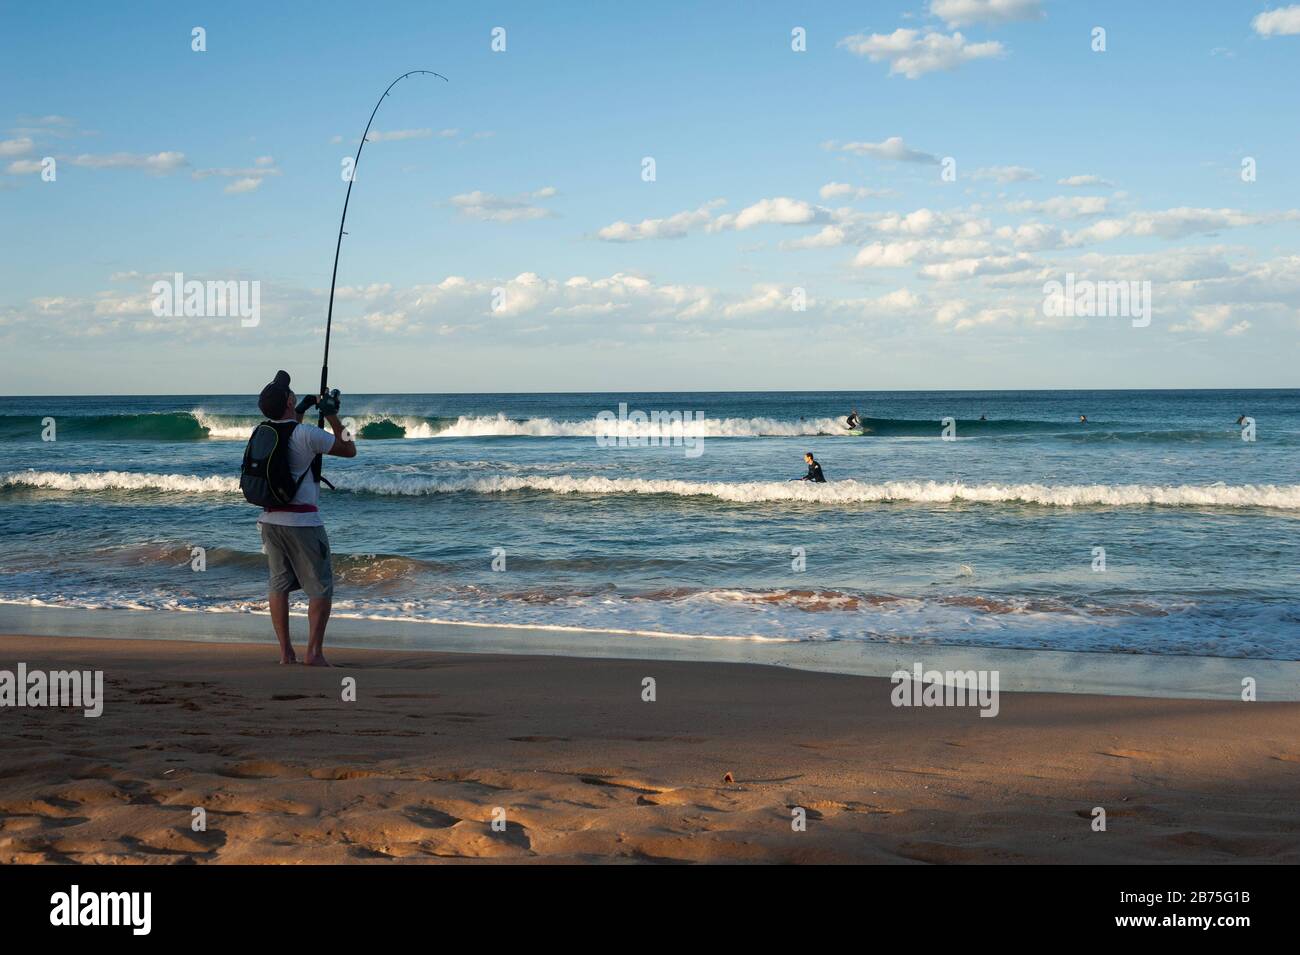 10.05.2018, Sydney, nuovo Galles del Sud, Australia - UN uomo è in piedi sulla spiaggia a Manly e la pesca, mentre in background surfisti sono in attesa per l'onda giusta. [traduzione automatica] Foto Stock